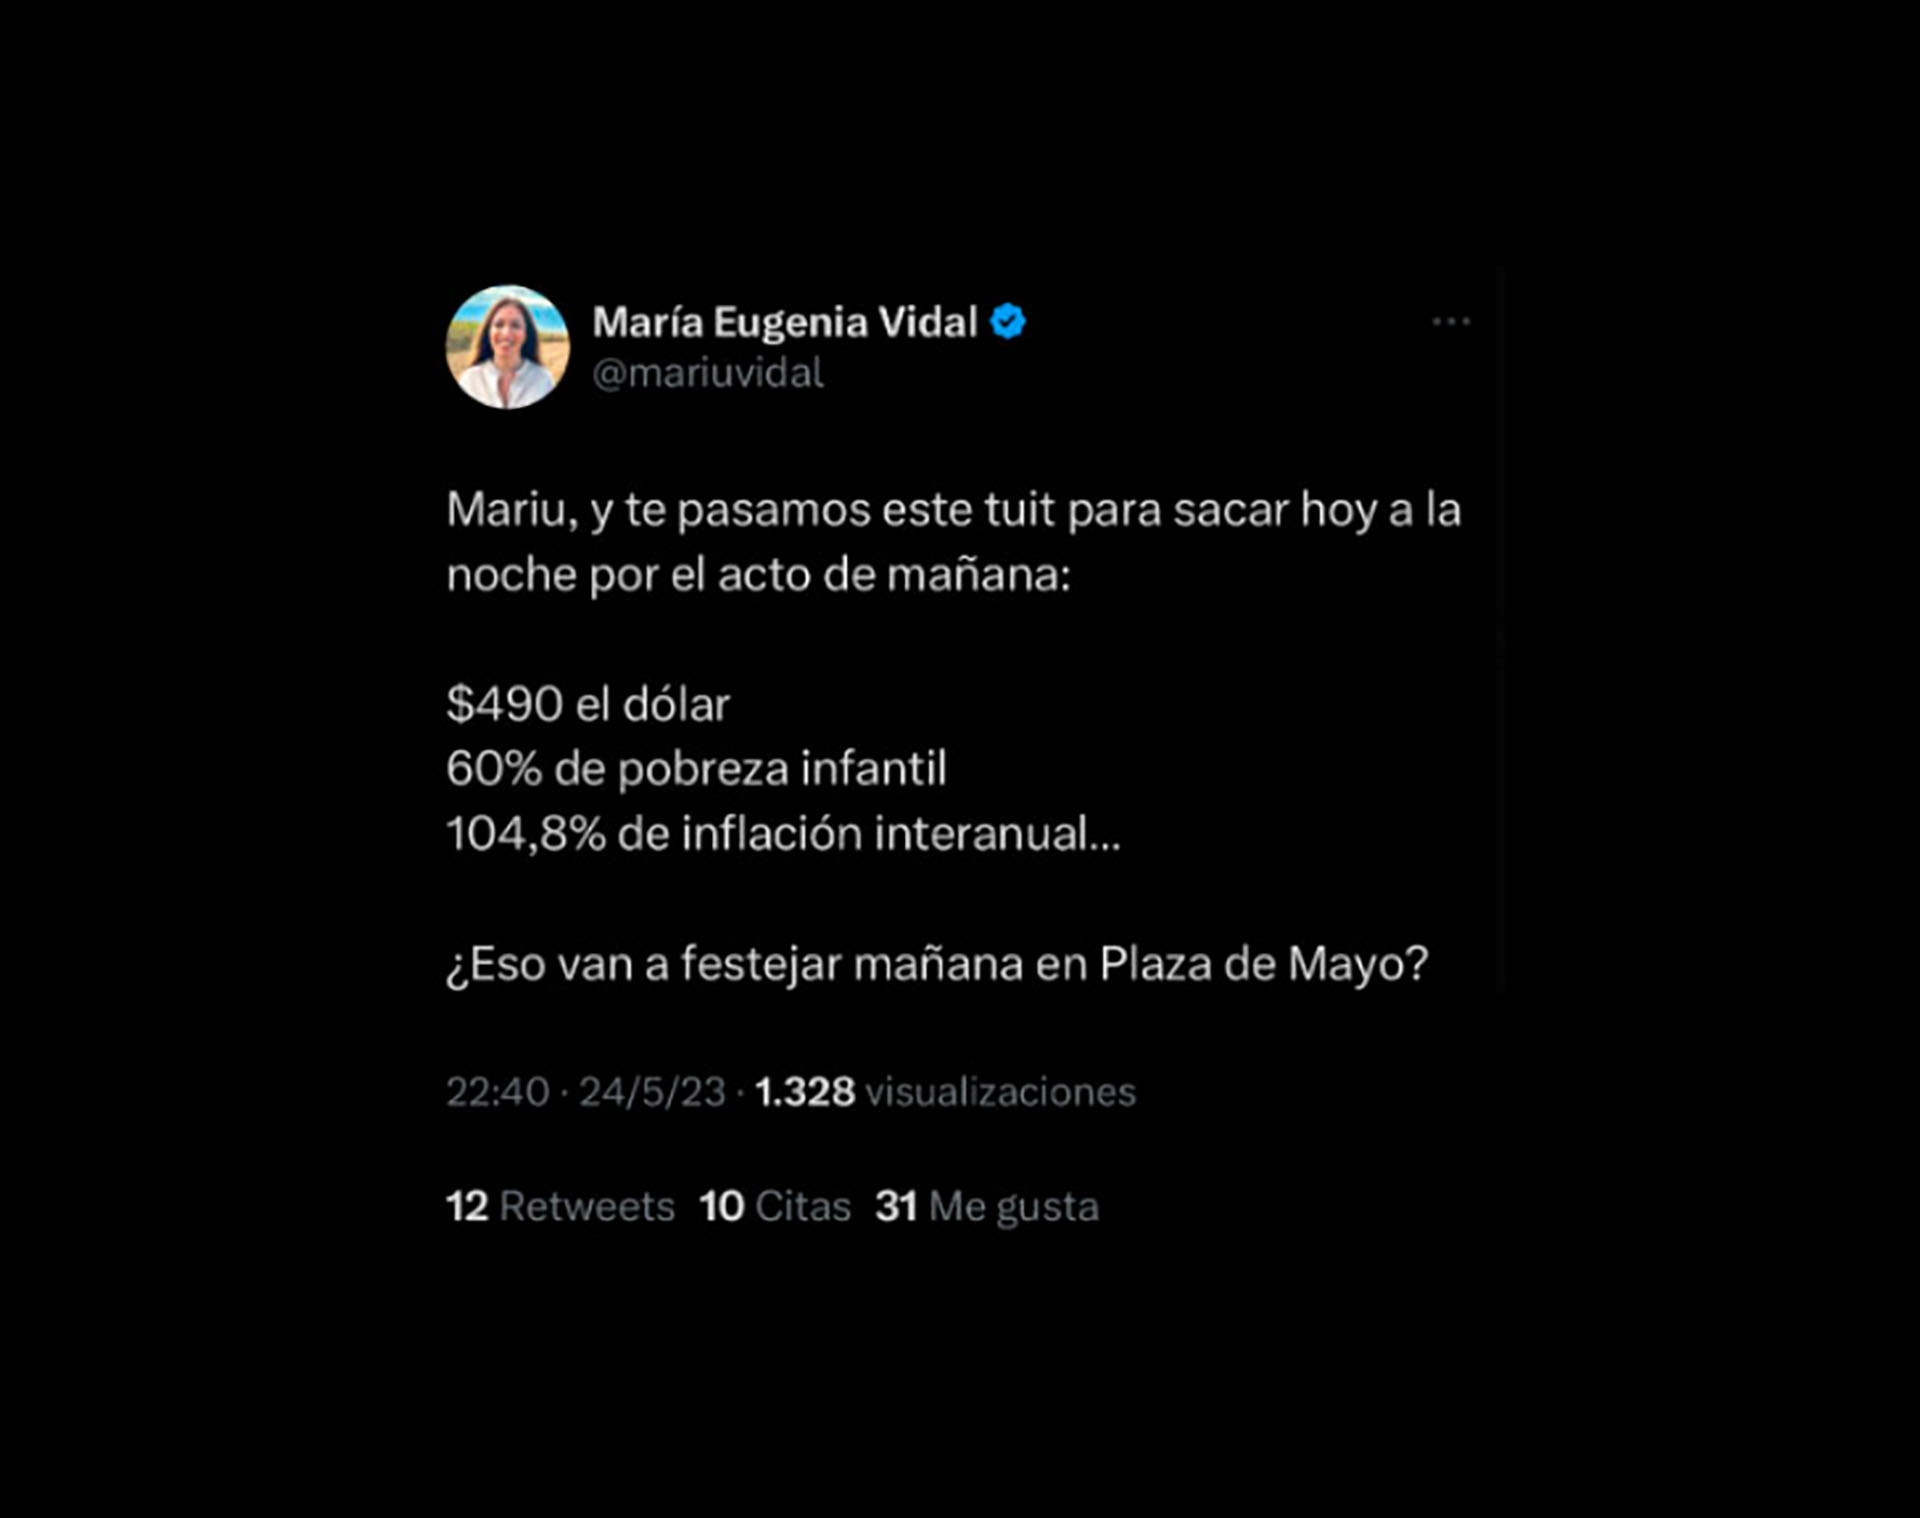 La publicación de María Eugenia Vidal que fue criticada en Twitter